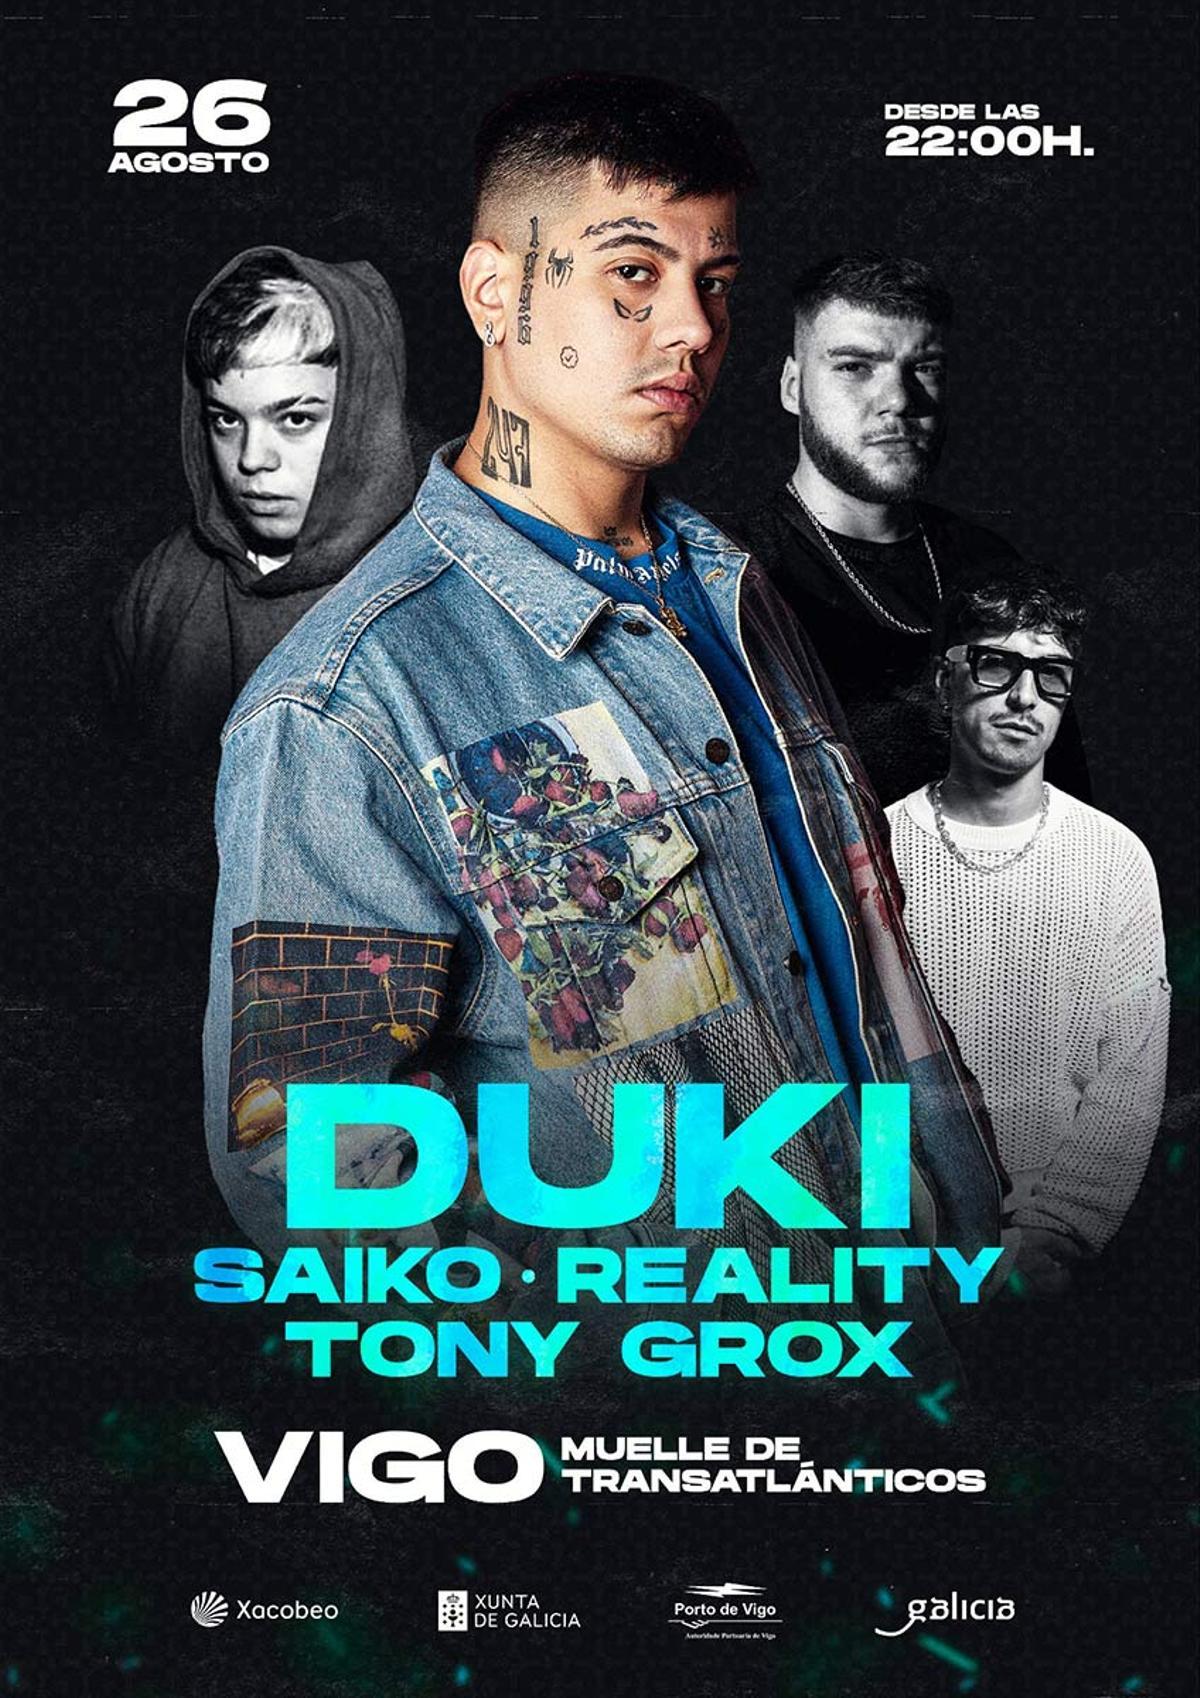 El concierto de Duki en Vigo será el 26 de agosto